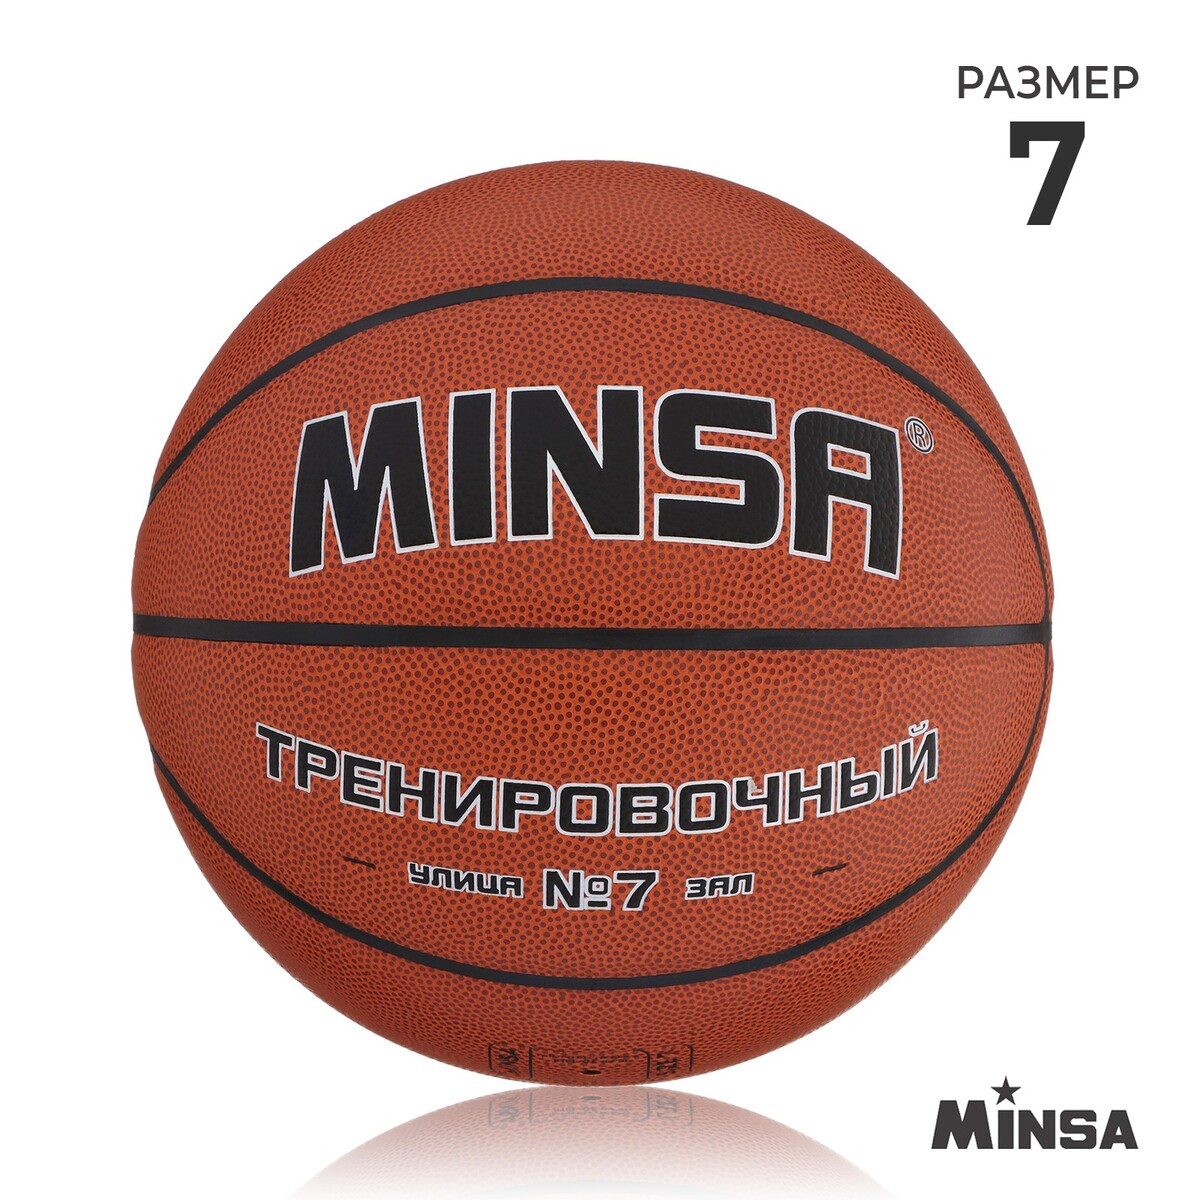 Баскетбольный мяч minsa, тренировочный, pu, клееный, 8 панелей, р. 7 мяч баскетбольный minsa sport пвх клееный 8 панелей р 7